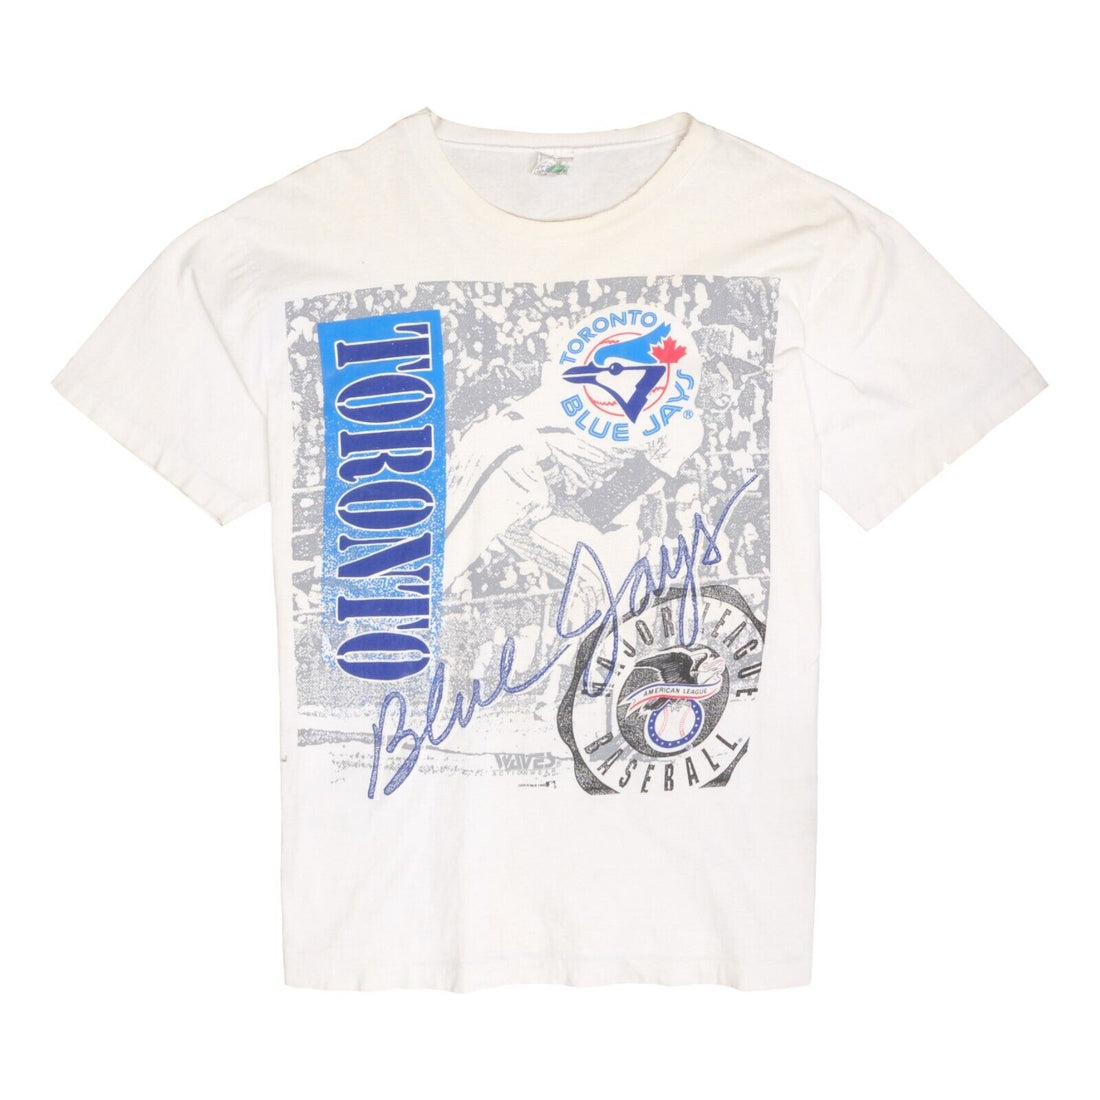 Vintage Toronto Blue Jays T-Shirt Size Large White 1990 90s MLB